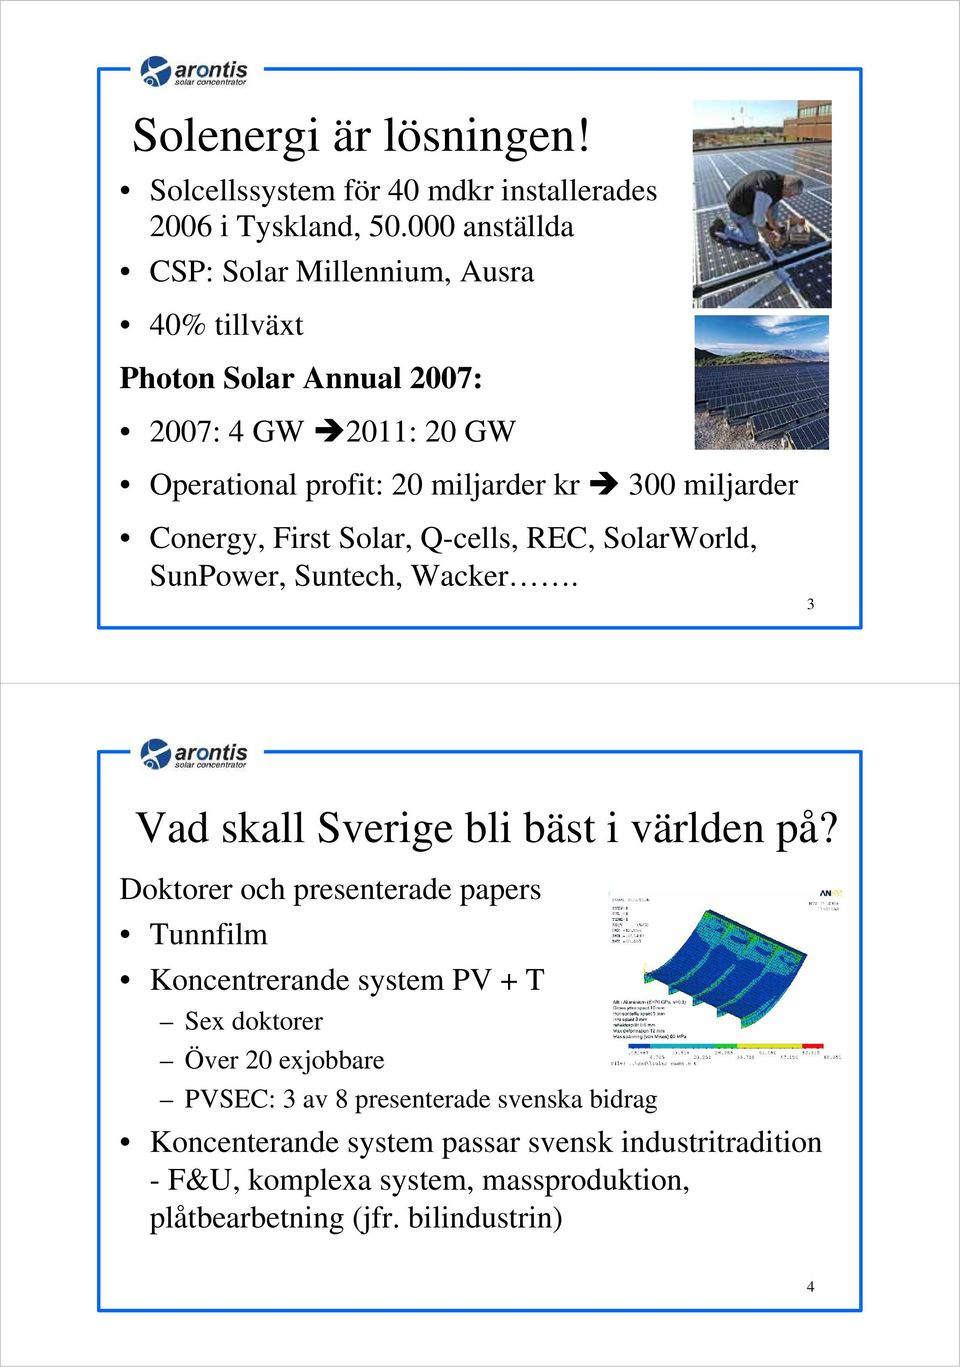 Conergy, First Solar, Q-cells, REC, SolarWorld, SunPower, Suntech, Wacker. 3 Vad skall Sverige bli bäst i världen på?